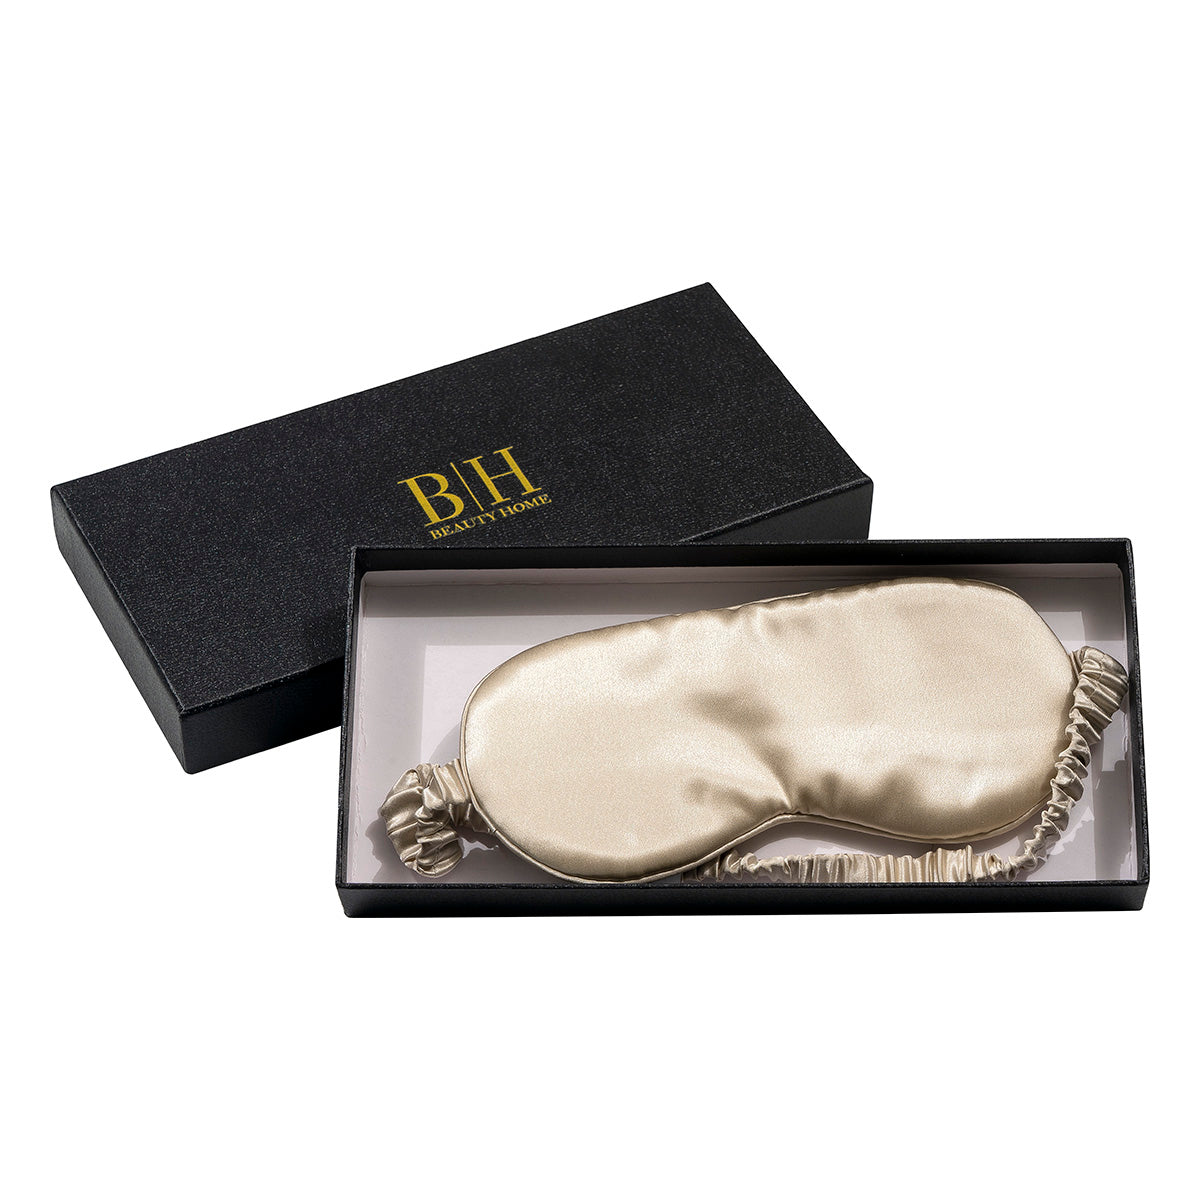 Μεταξωτή μάσκα ύπνου σε κουτί δώρου Art 12163 Εκρού Beauty Home από την εταιρεία Beauty Home